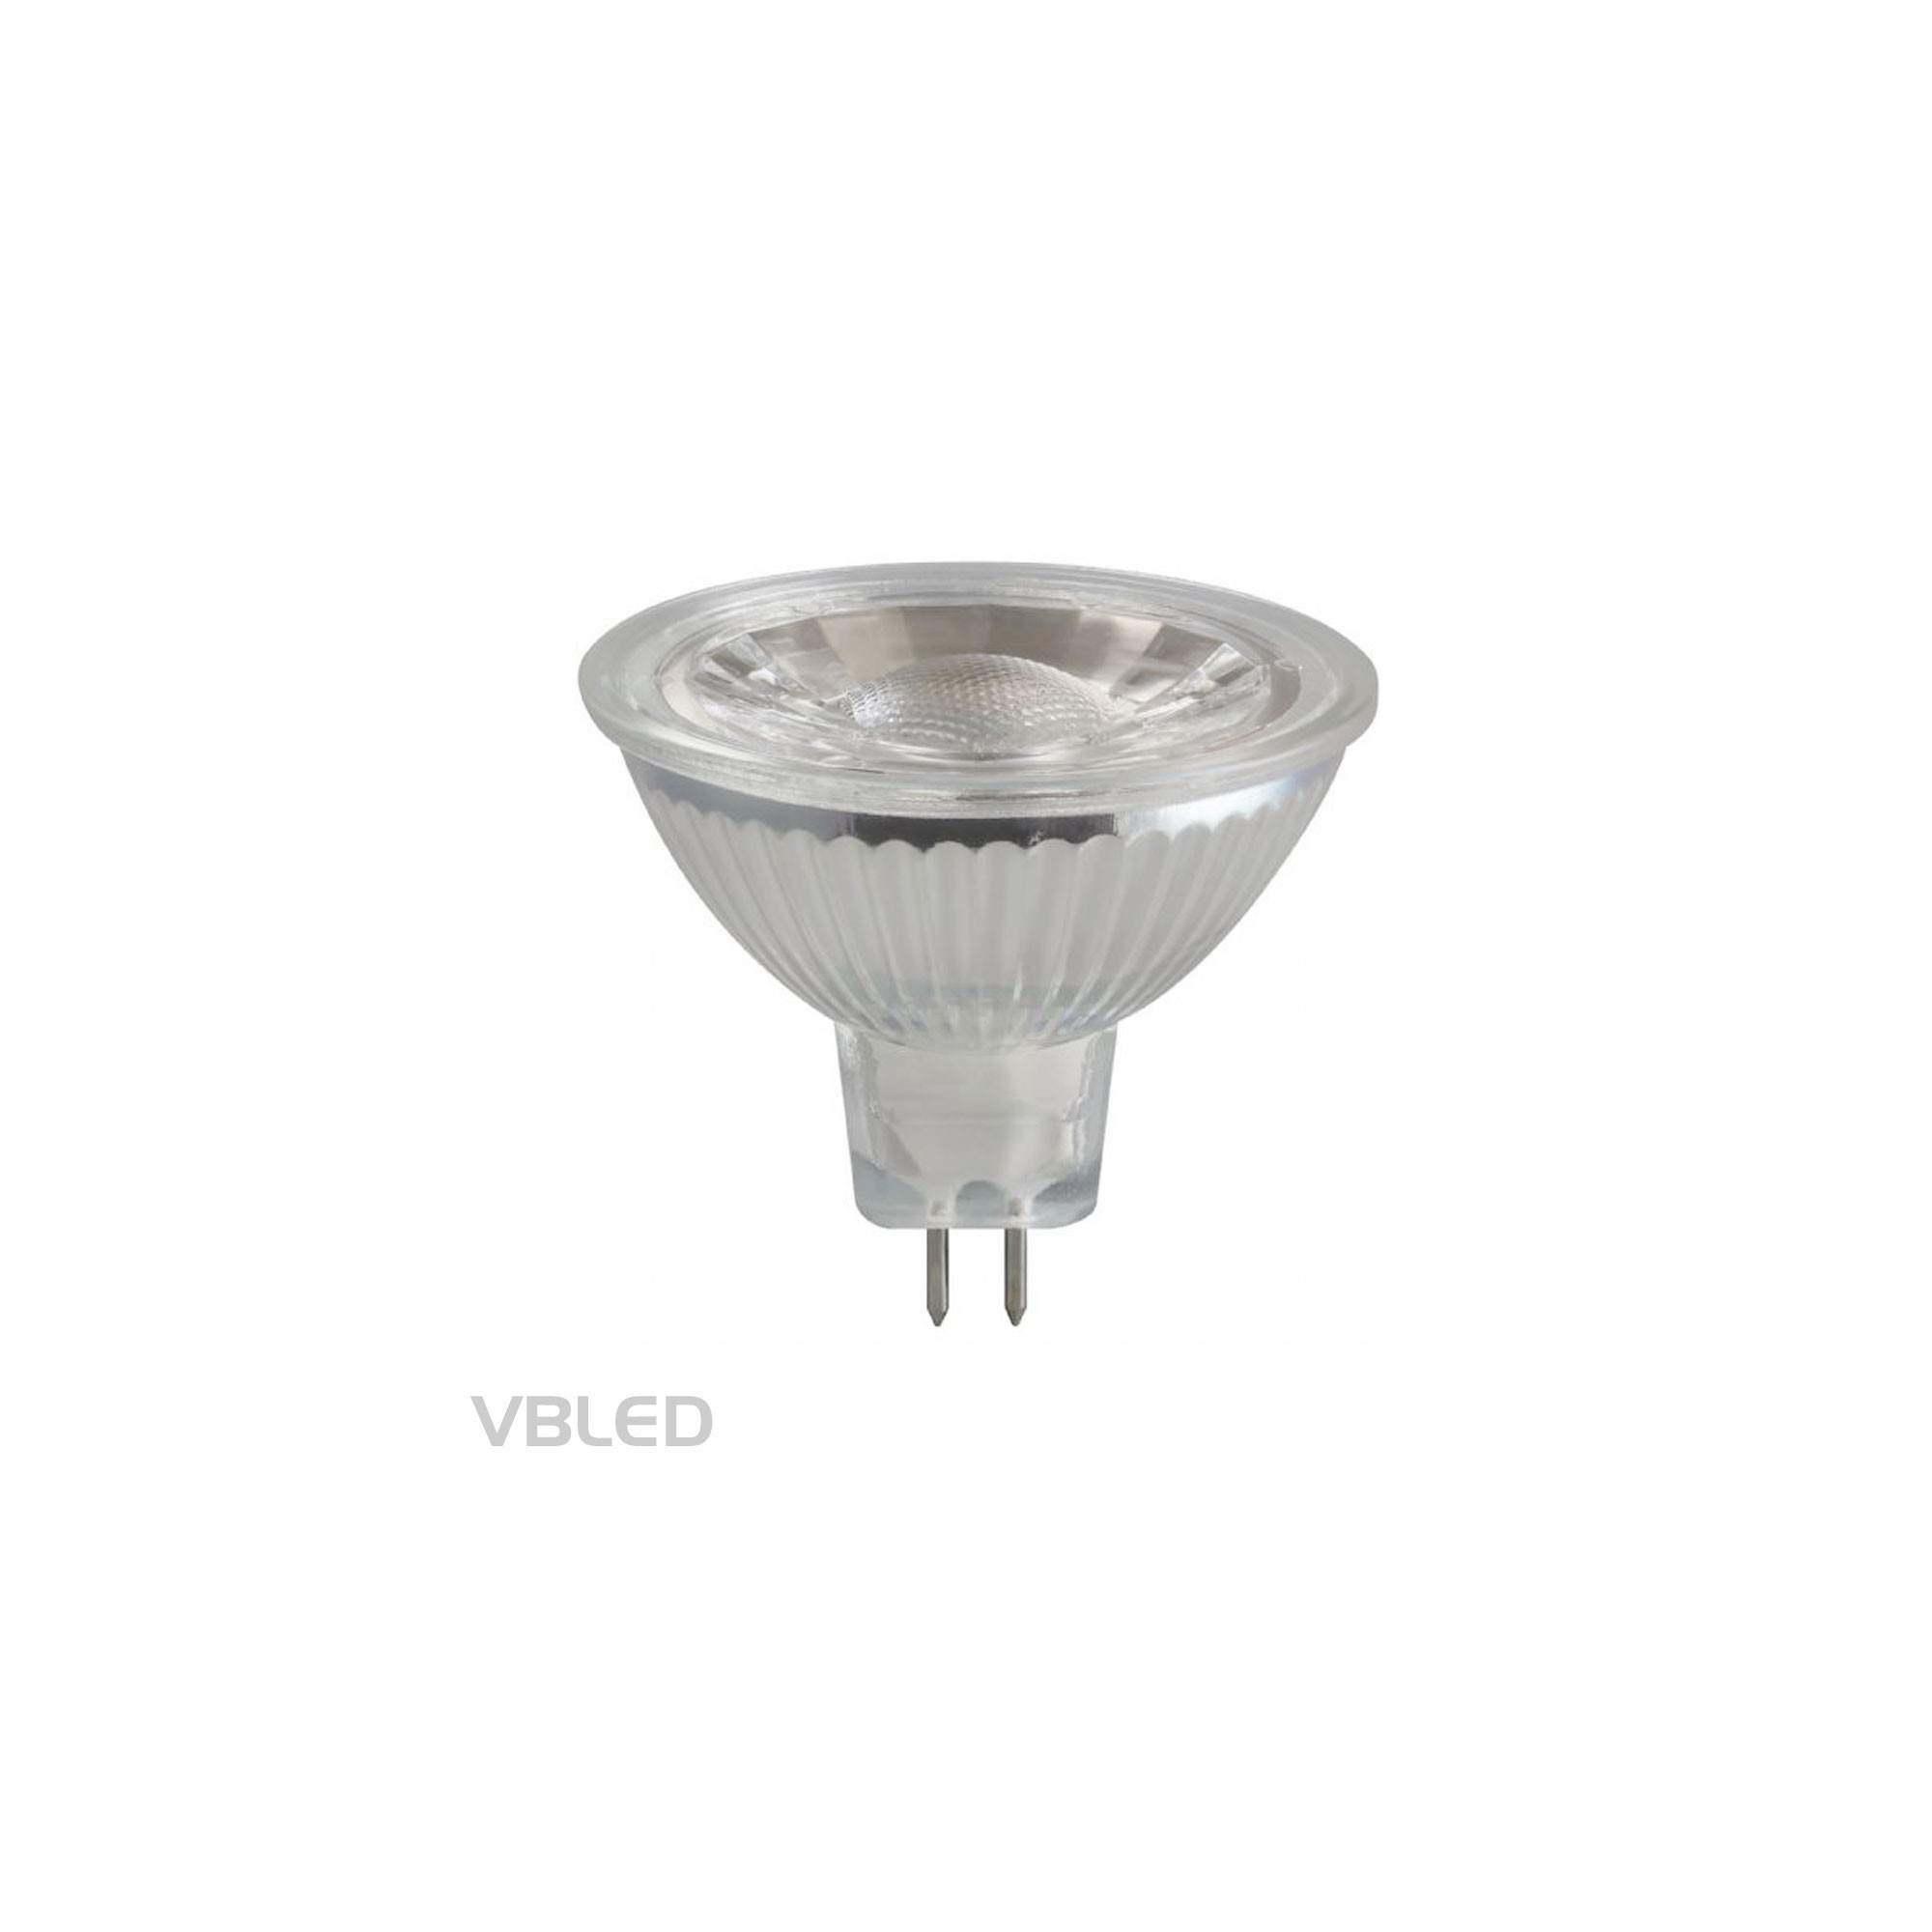 Ampoules LED MR16 GU5.3, 450LM, 5W remplacement des ampoules halogènes 50W, Blanc chaud (2900K), dimmersible, 12V AC/DC